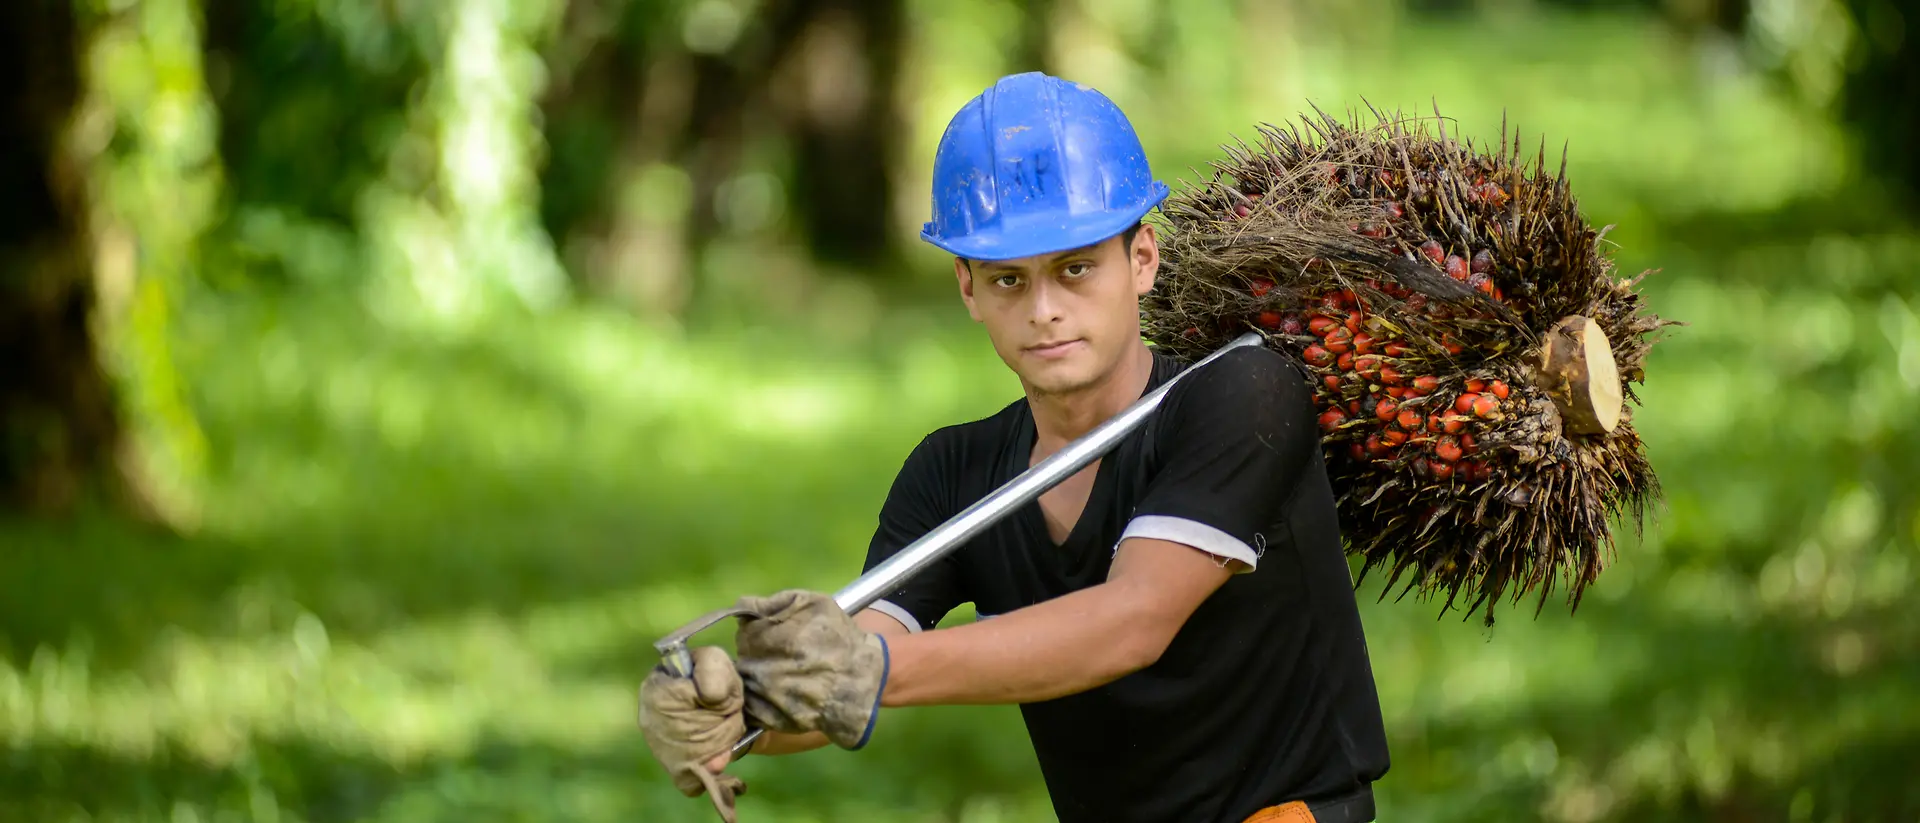 Arbeider die een blauwe helm draagt en palmvruchten draagt op een palmplantage